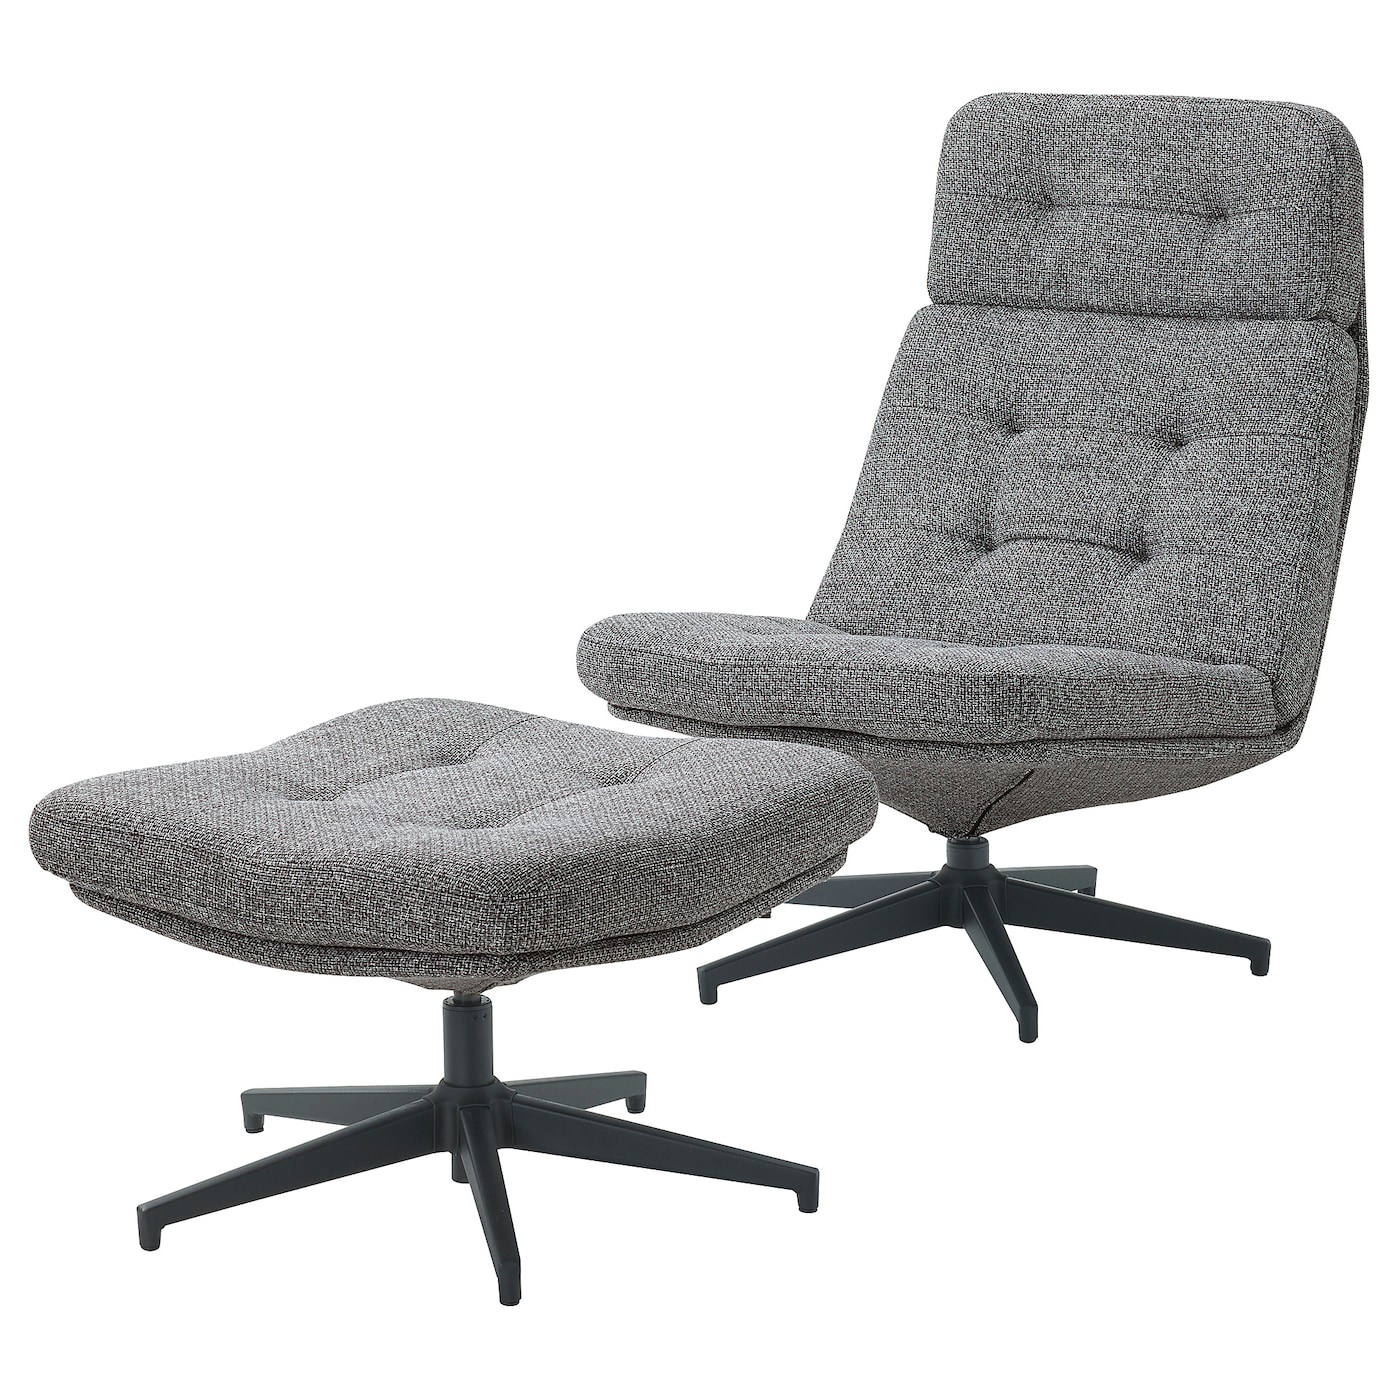 ХАВБЕРГ Кресло и подставка для ног, Лейде серый/черный HAVBERG IKEA эргономичное колесико офисное кресло с поддержкой спинки удобное вращающееся игровое кресло подставка для ног офисная мебель